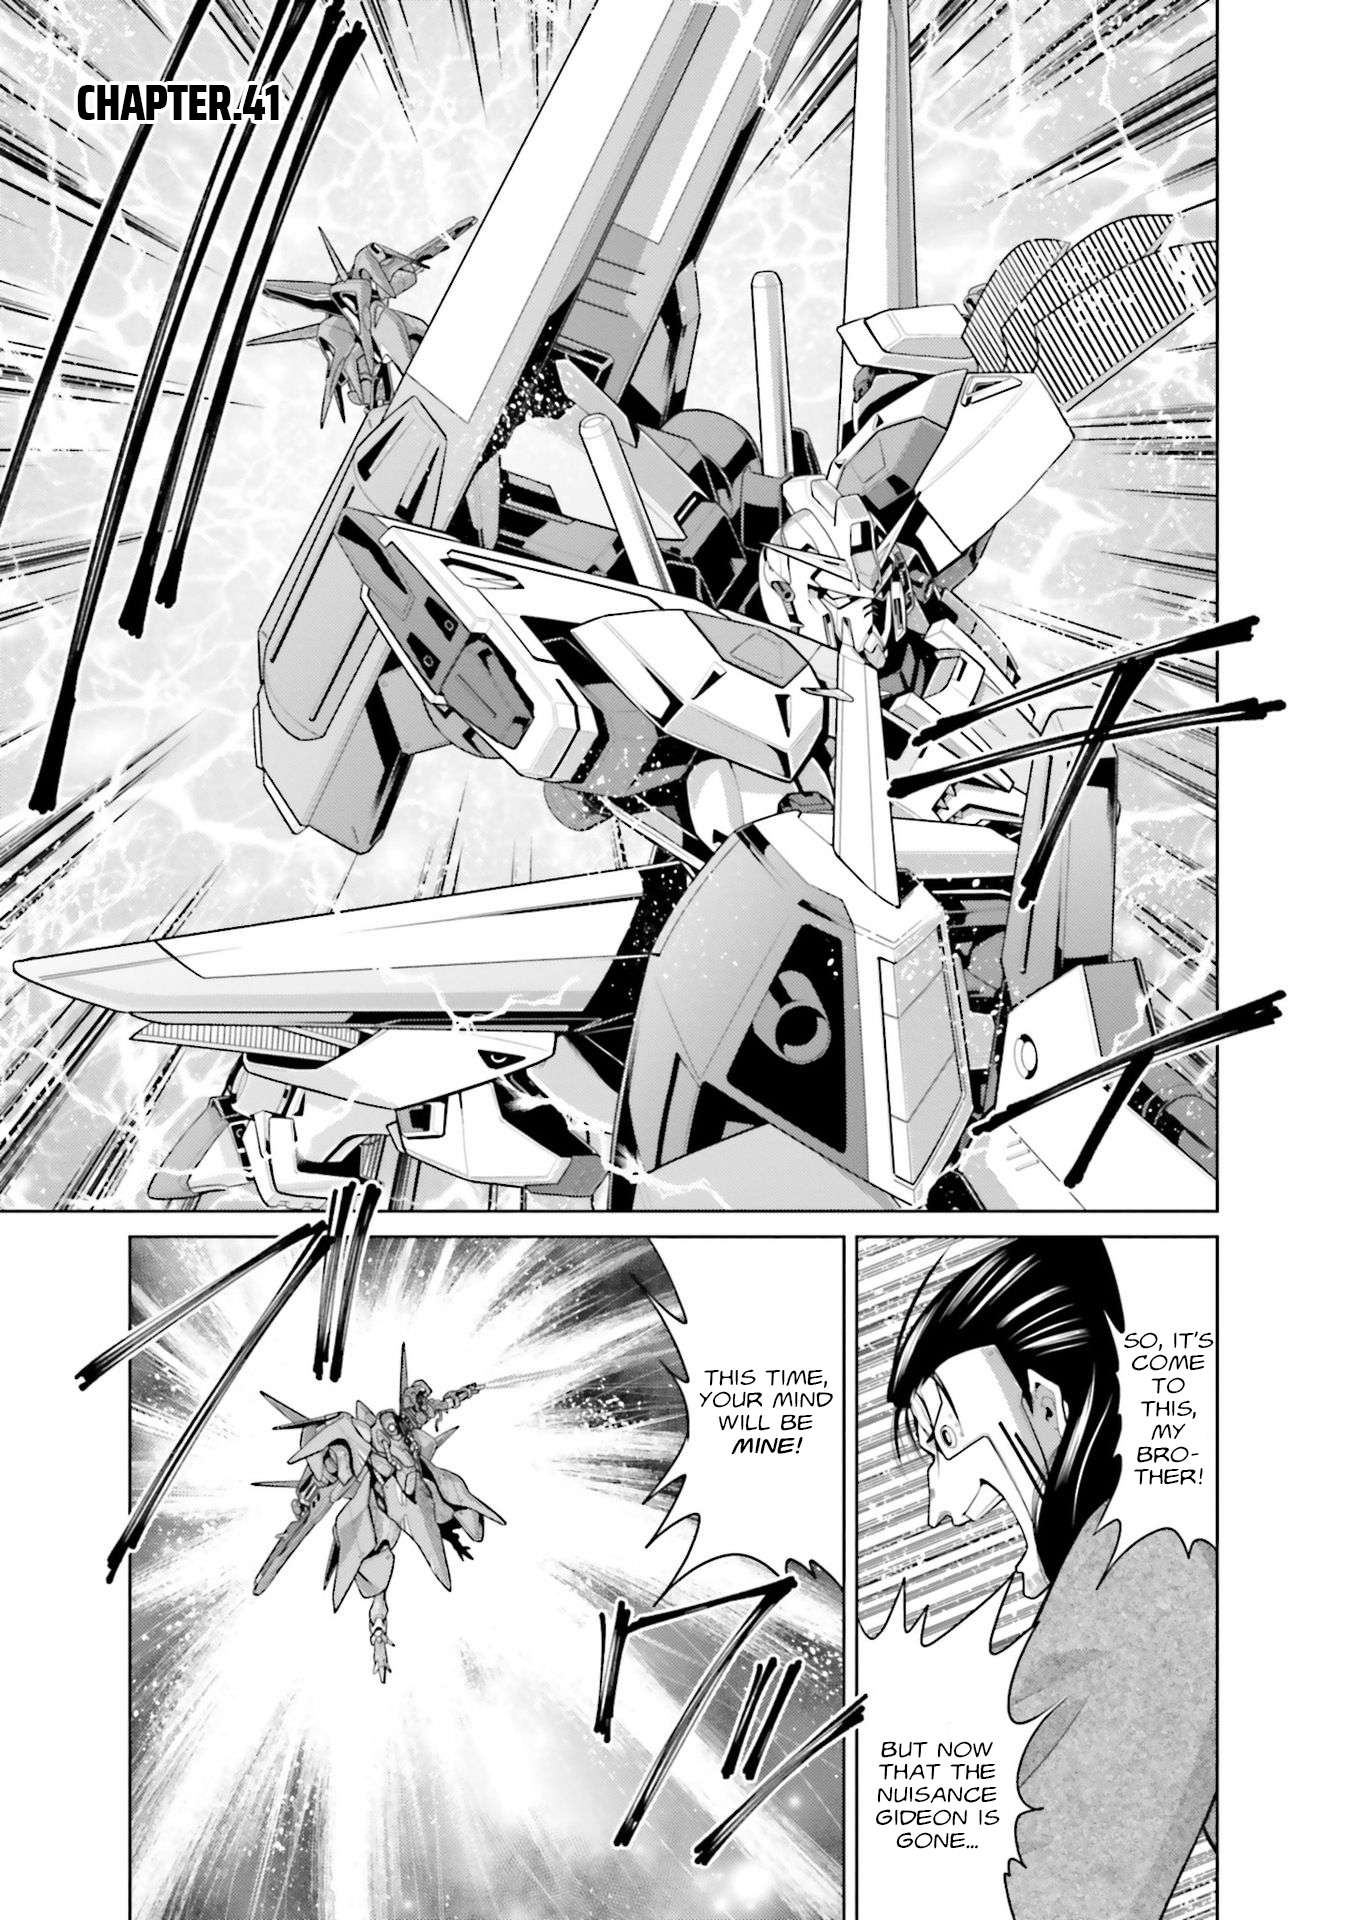 Kidou Senshi Gundam F90 FF - chapter 41 - #1